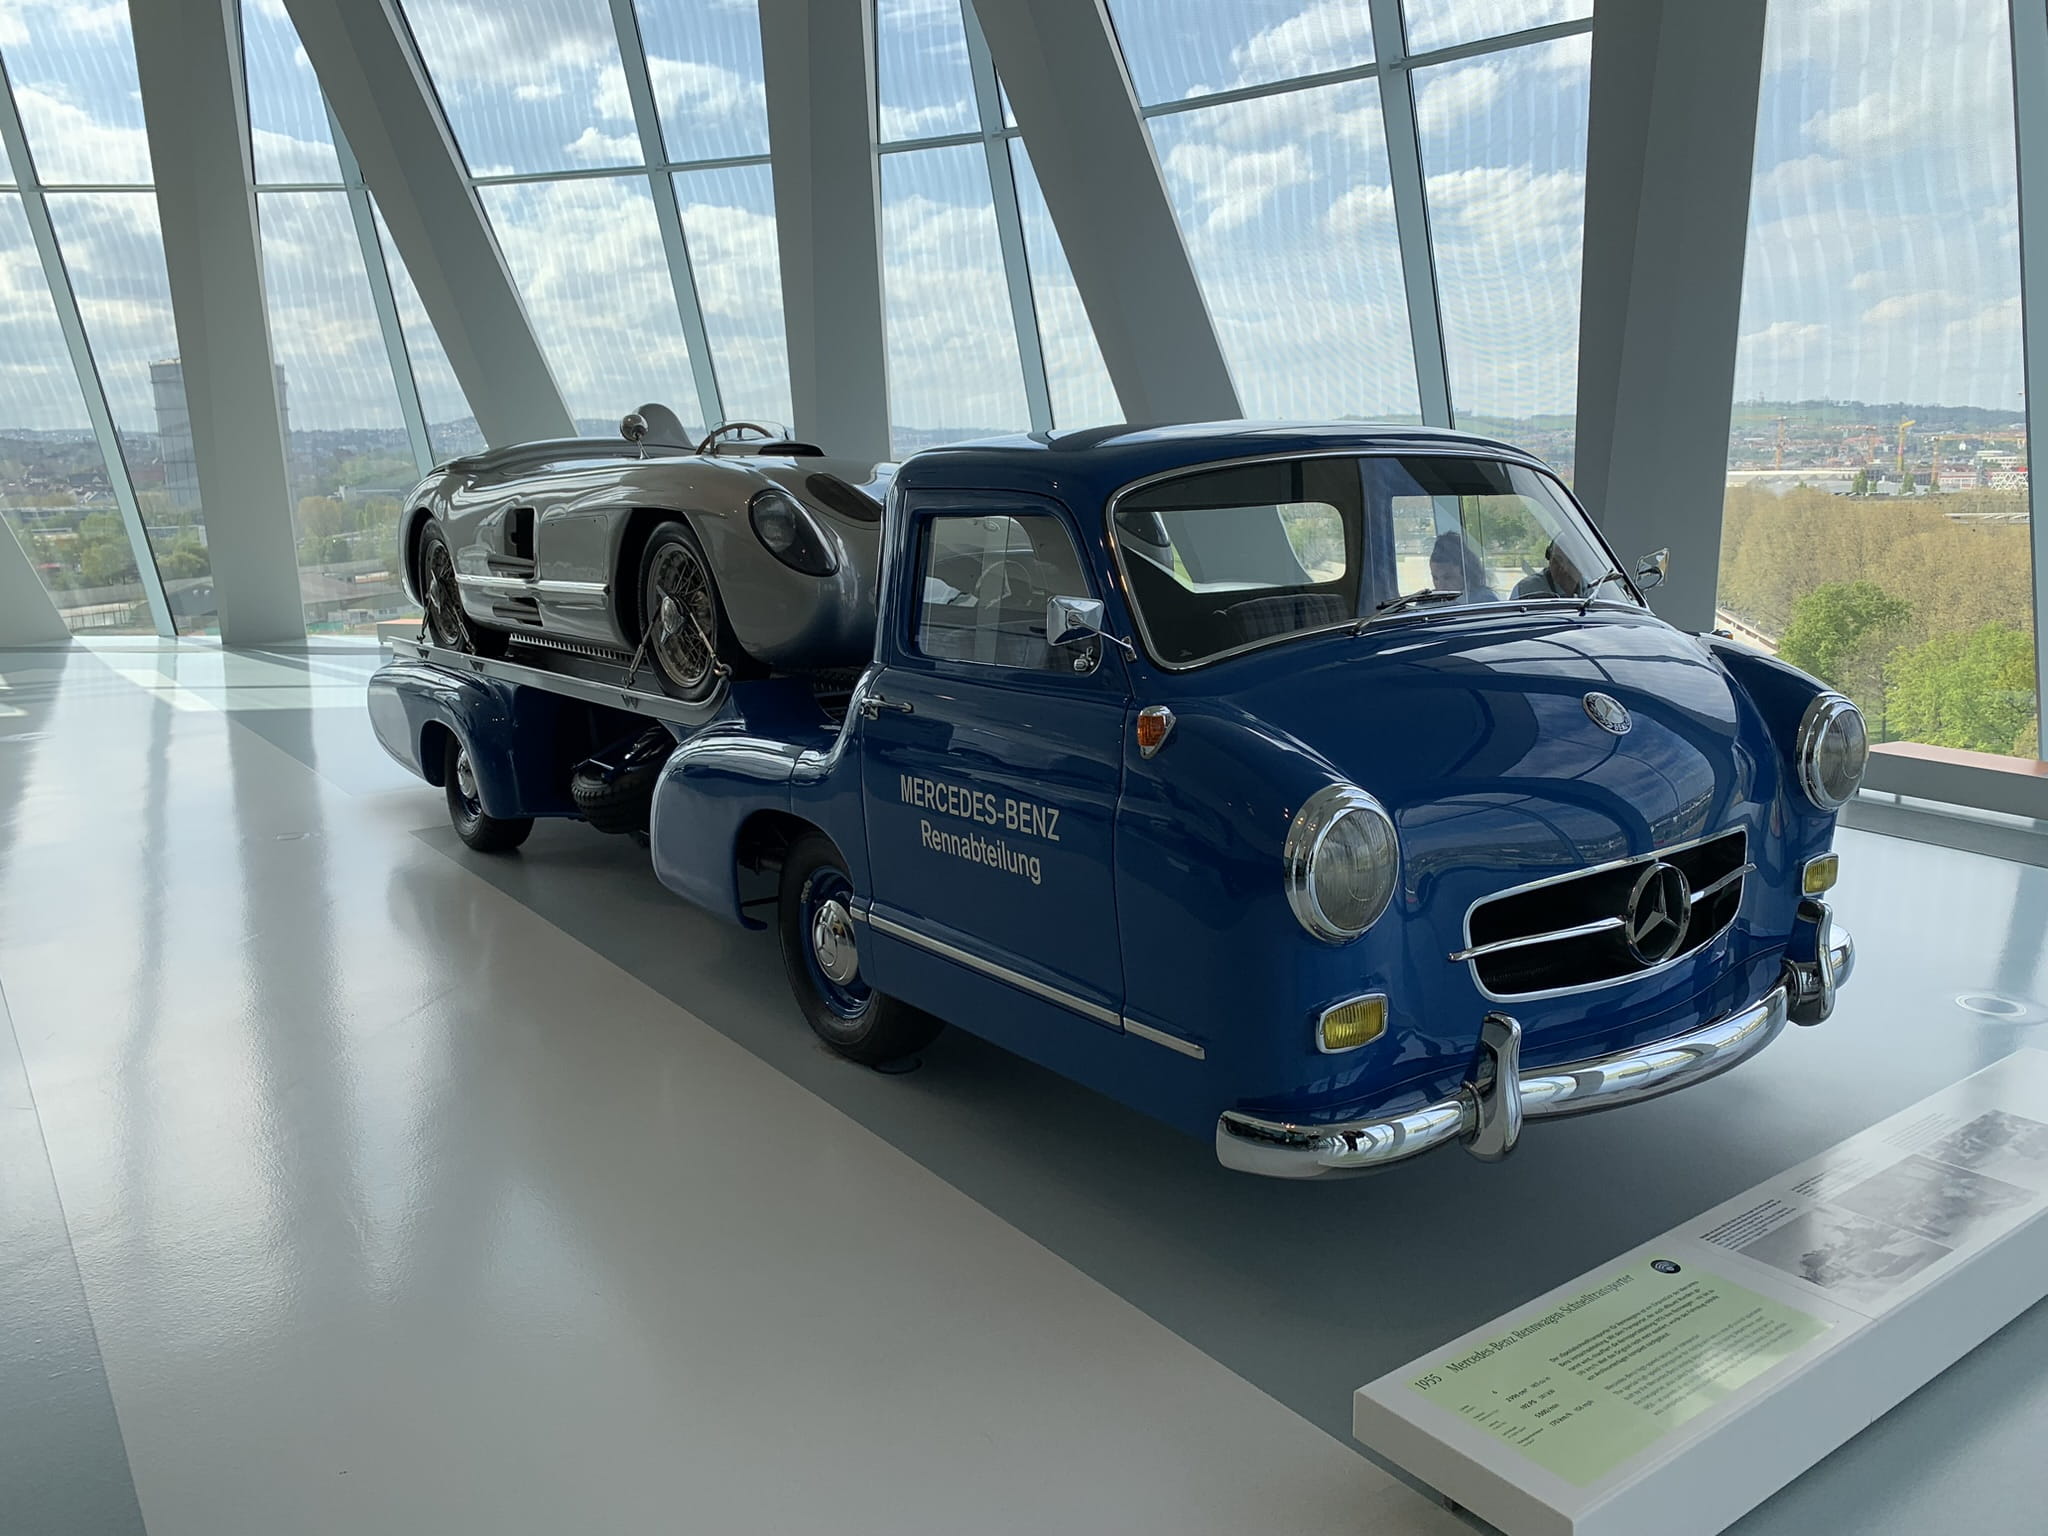 The Mercedes-Benz Rennabteilung truck